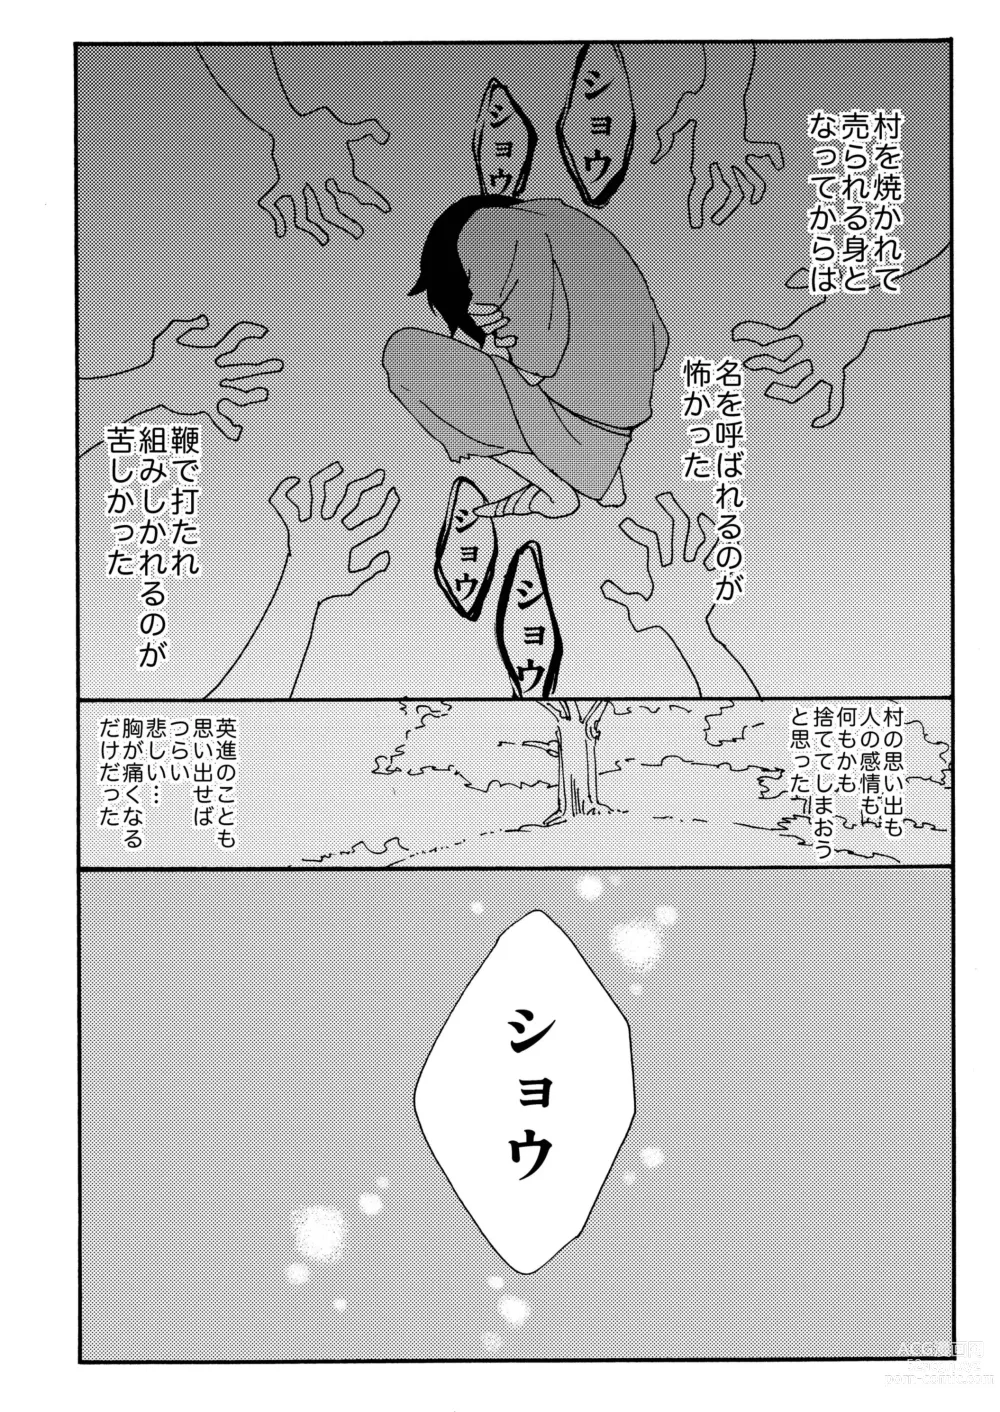 Page 73 of doujinshi Kizu